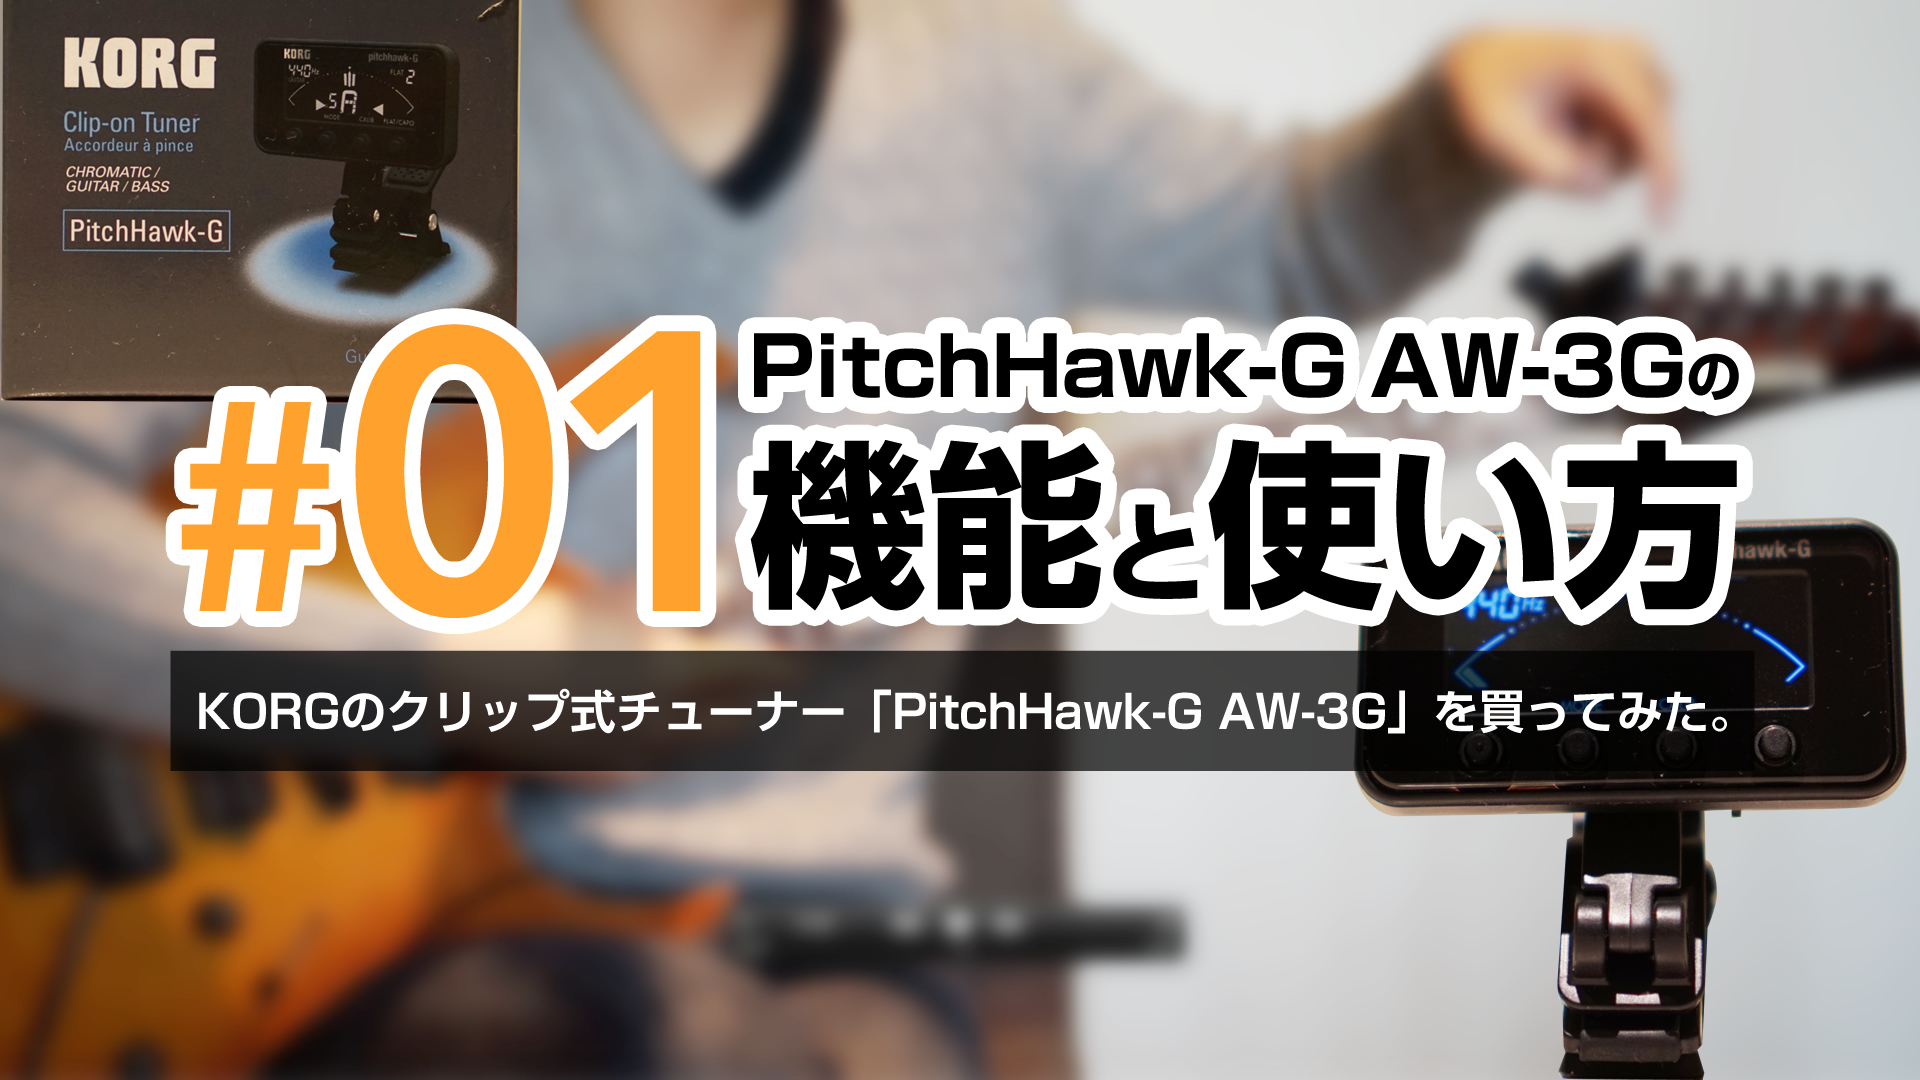 #01KORGのクリップ式チューナー「PitchHawk-G AW-3G」の機能と使い方について